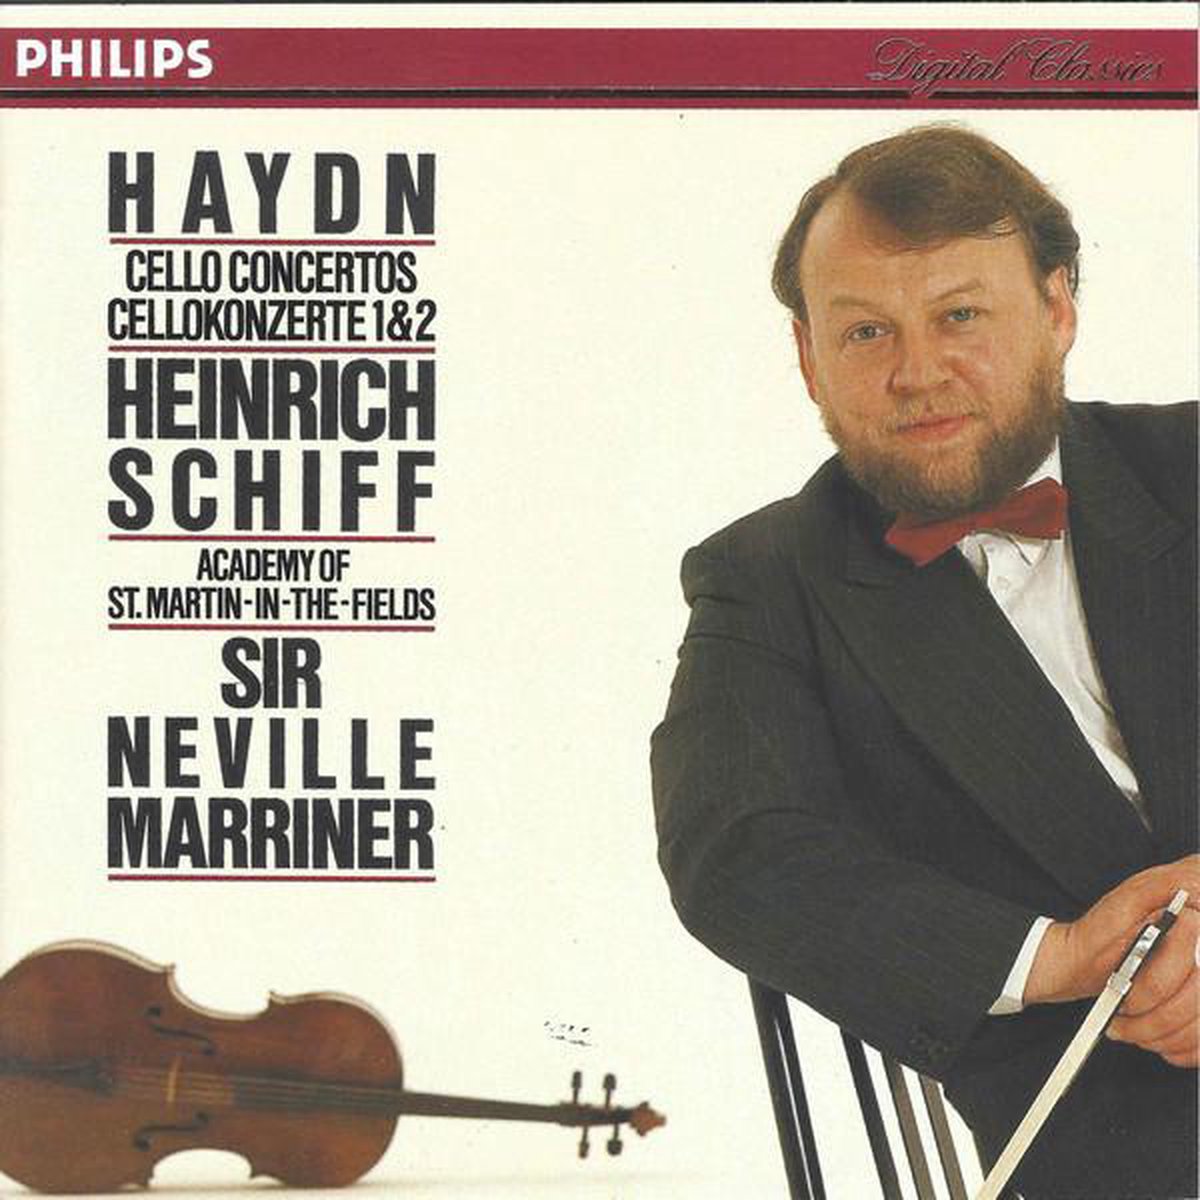 Haydn: Cello Concertos Nos. 1 & 2 - Heinrich Schiff